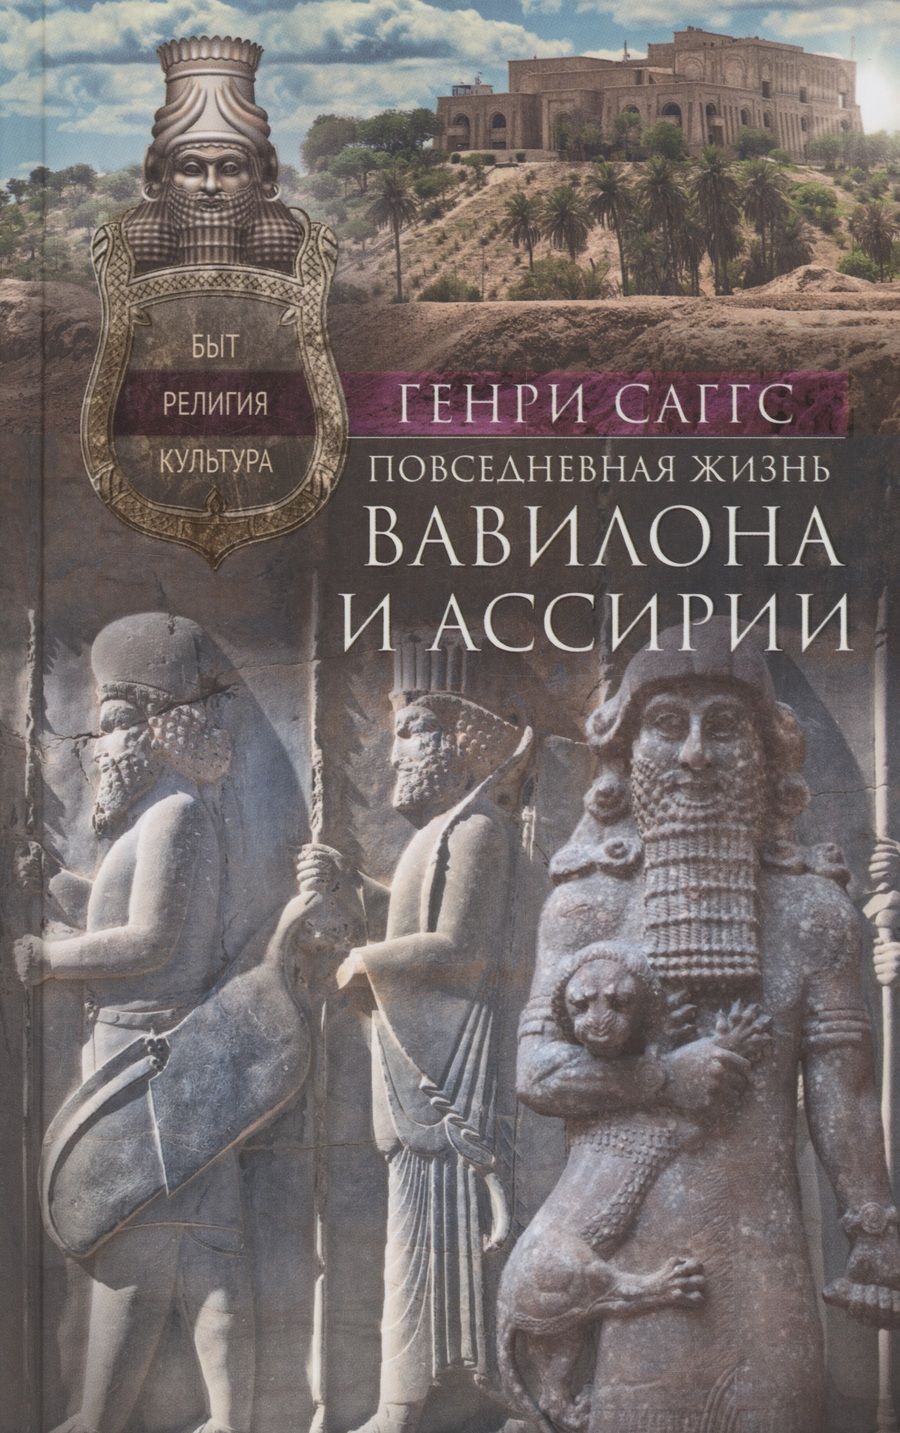 Обложка книги "Саггс: Повседневная жизнь Вавилона и Ассирии. Быт, религия, культура"